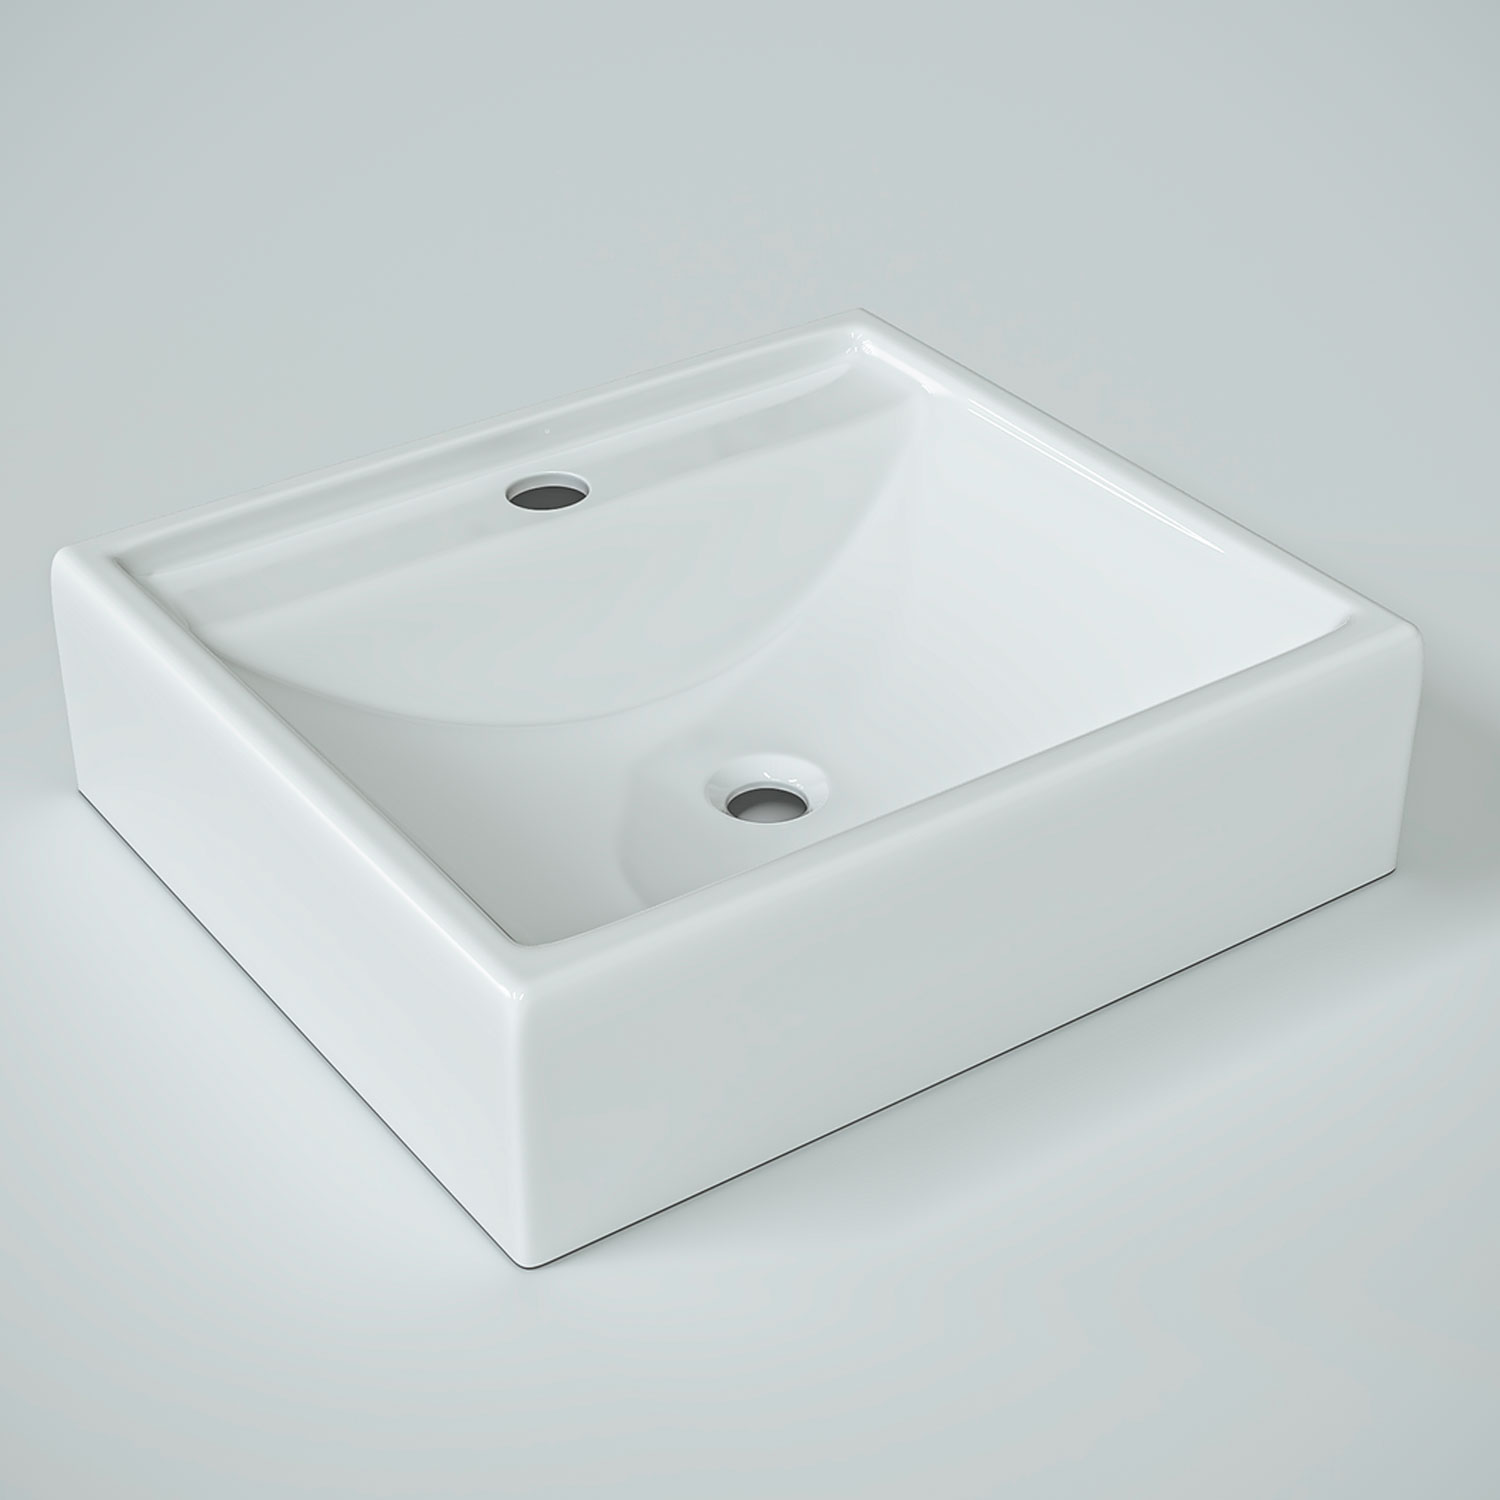 Cuba de apoio para banheiro modelo Ravena marmore sintetico + Valvula